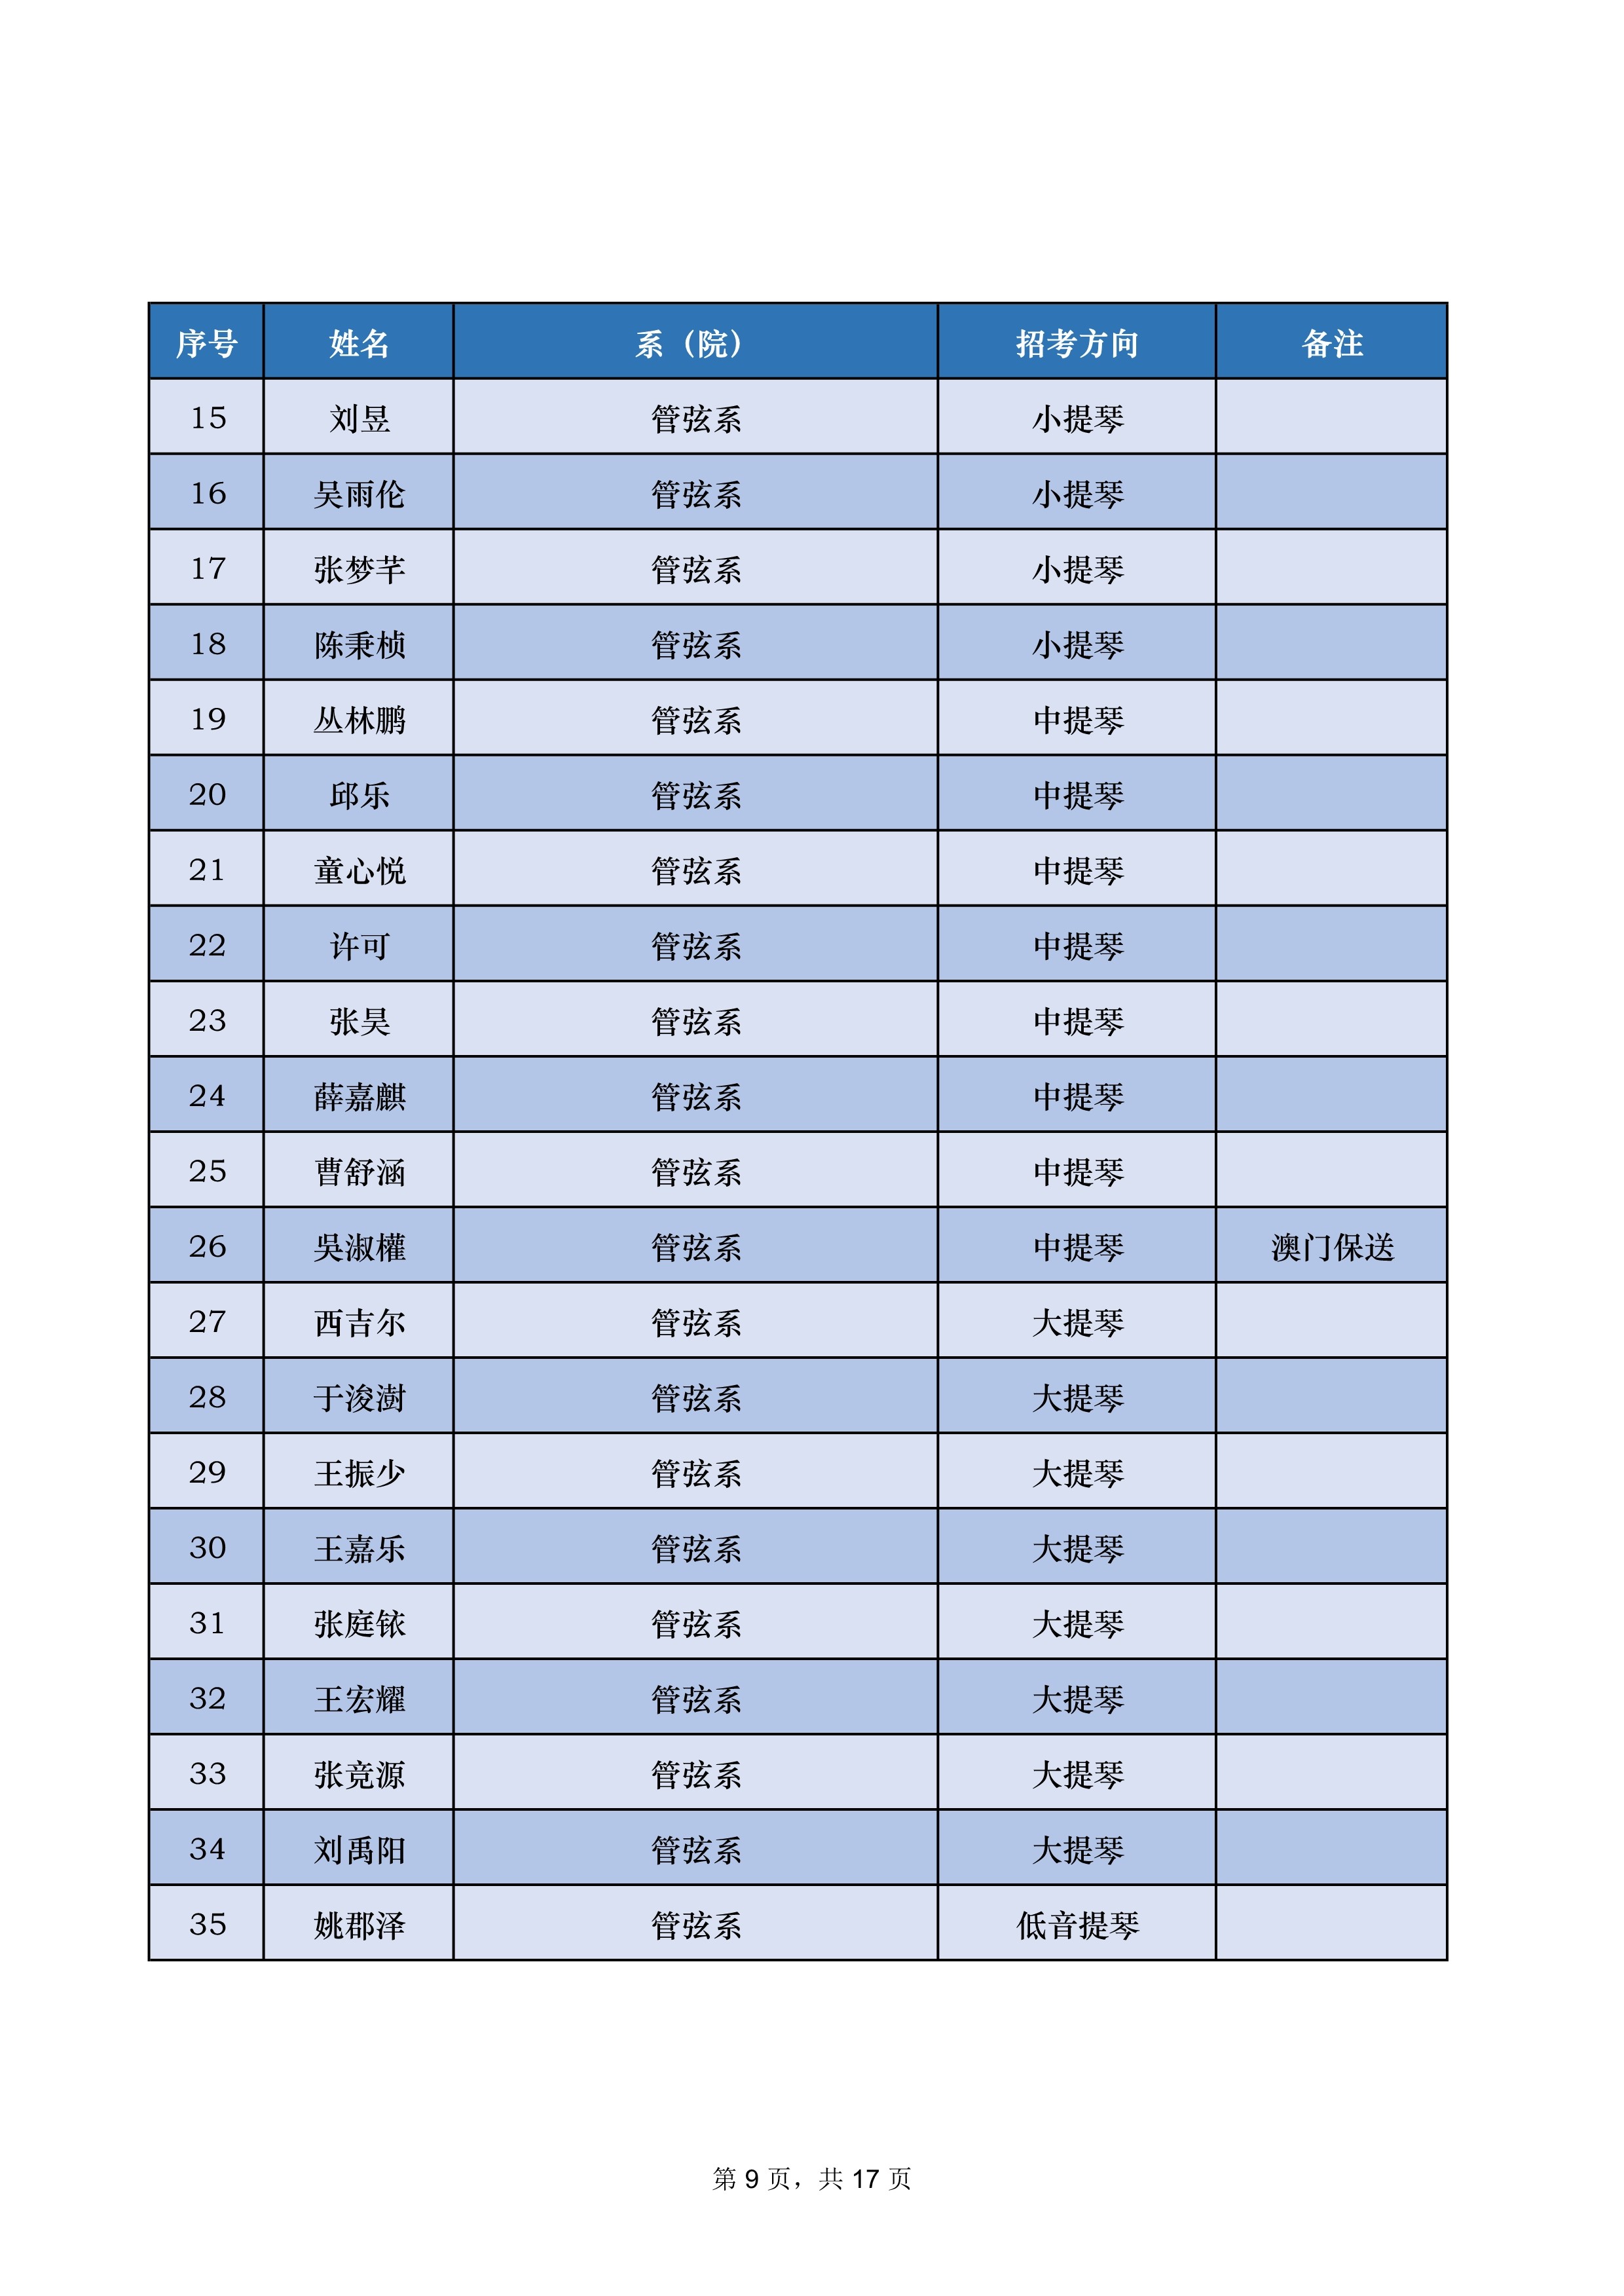 中央音乐学院2022年本科招生录取名单【不含上海考生和香港中学文凭考生】_9.jpg